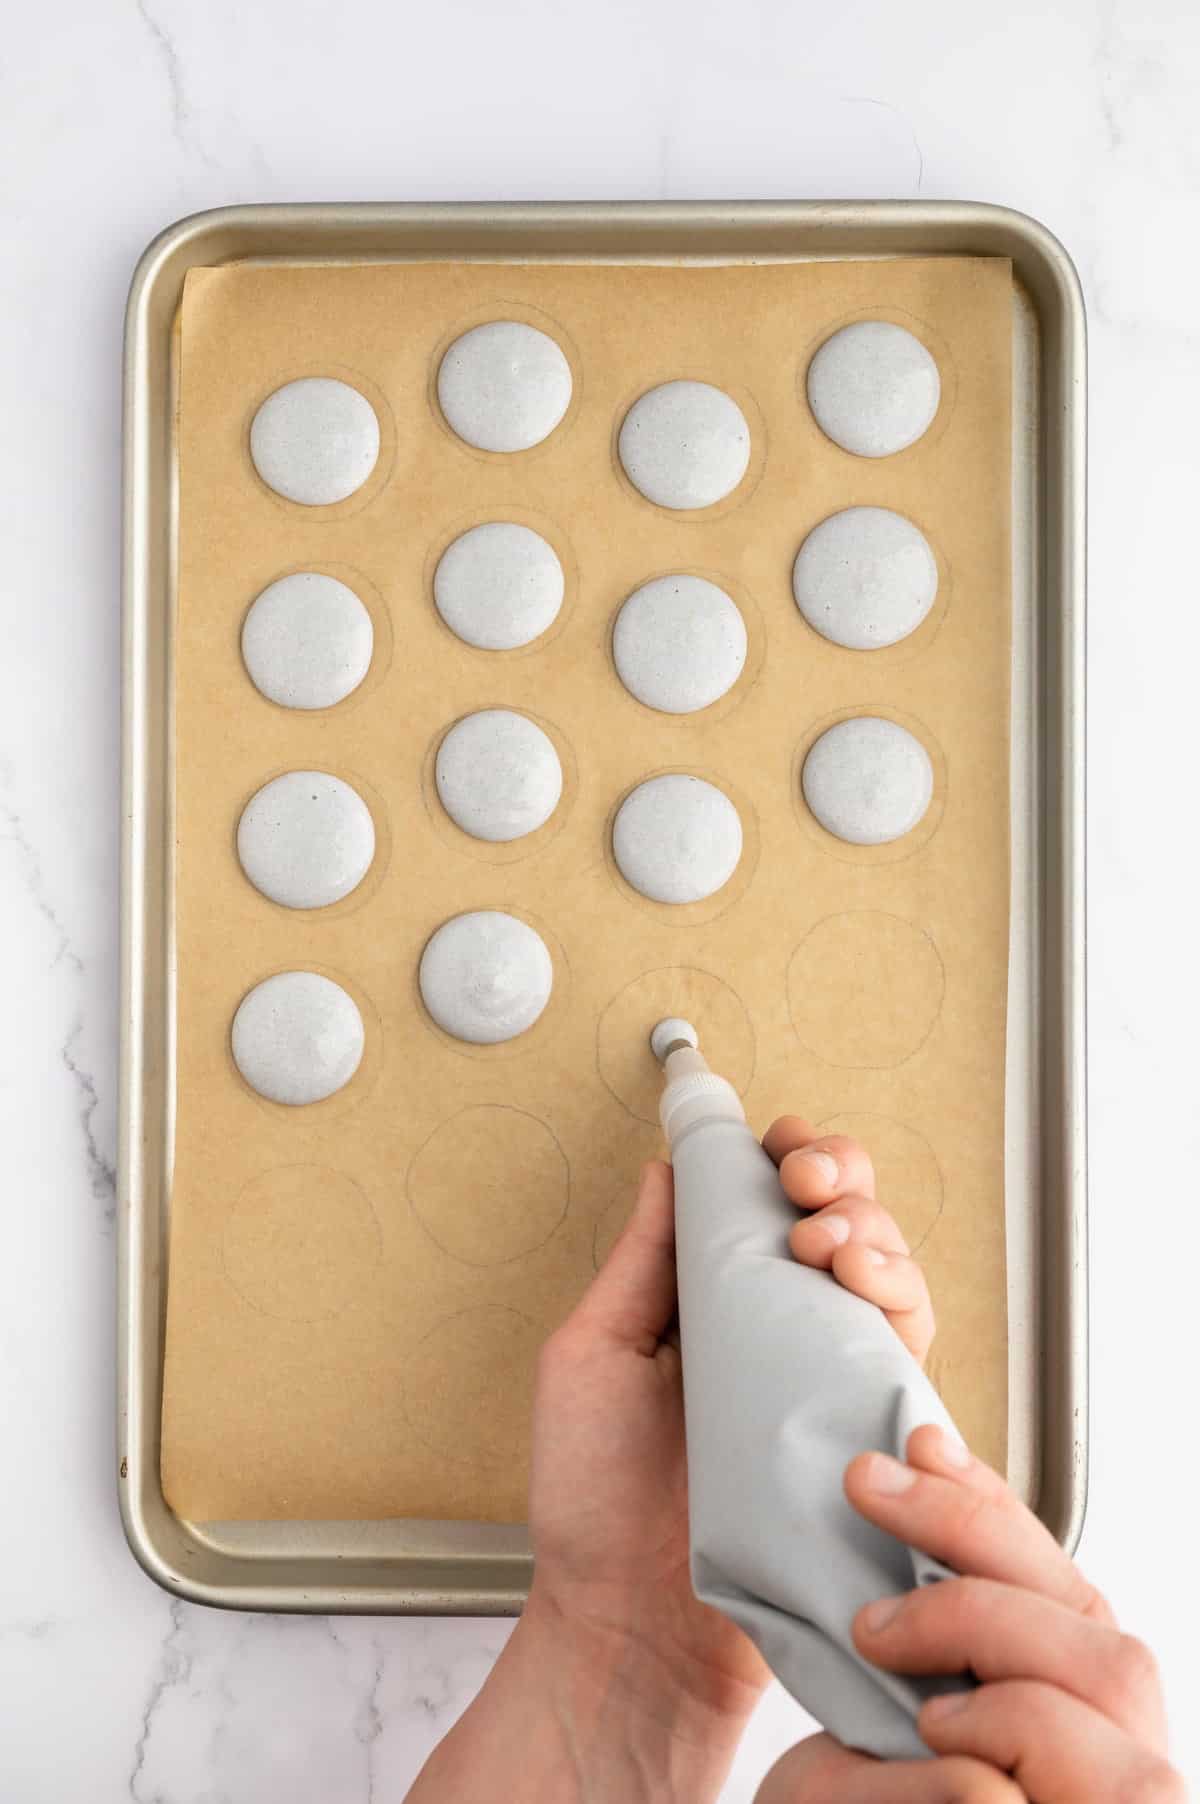 Piping vegan macaron batter onto a prepared baking sheet.